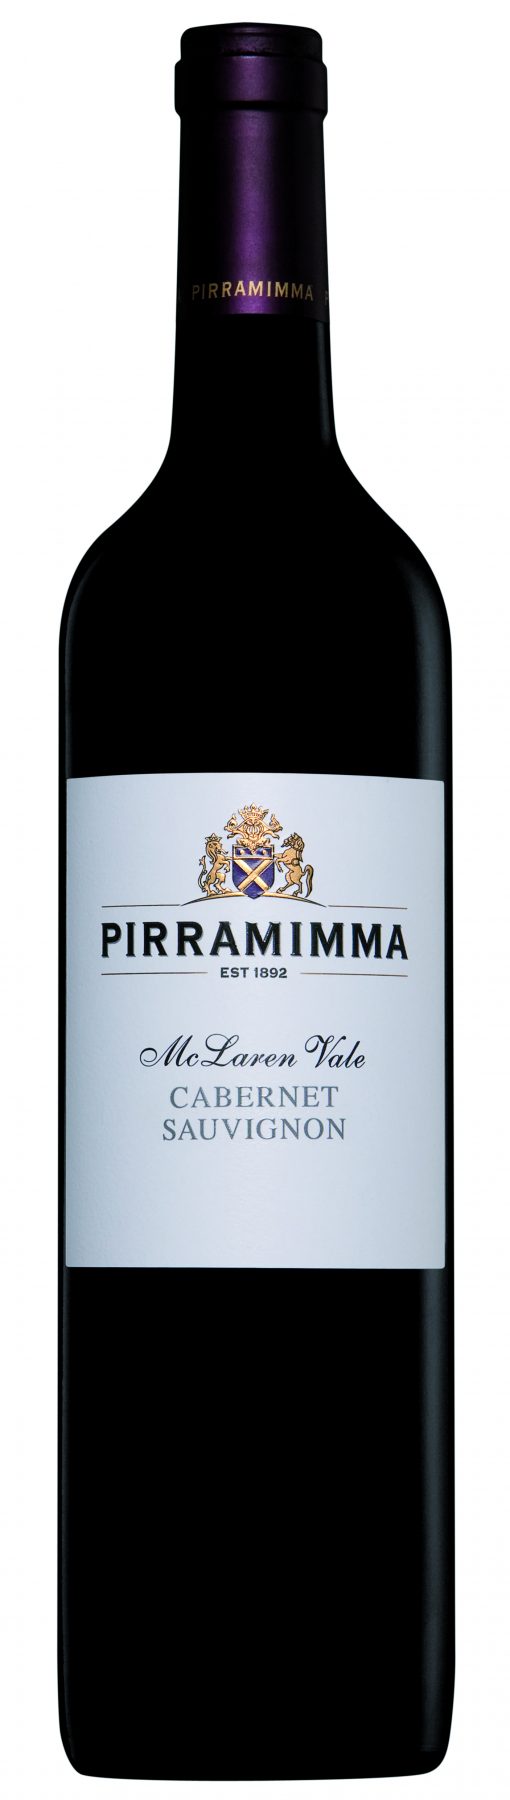 Australia Wine - PIRRAMIMMA - CABERNET SAUVIGNON